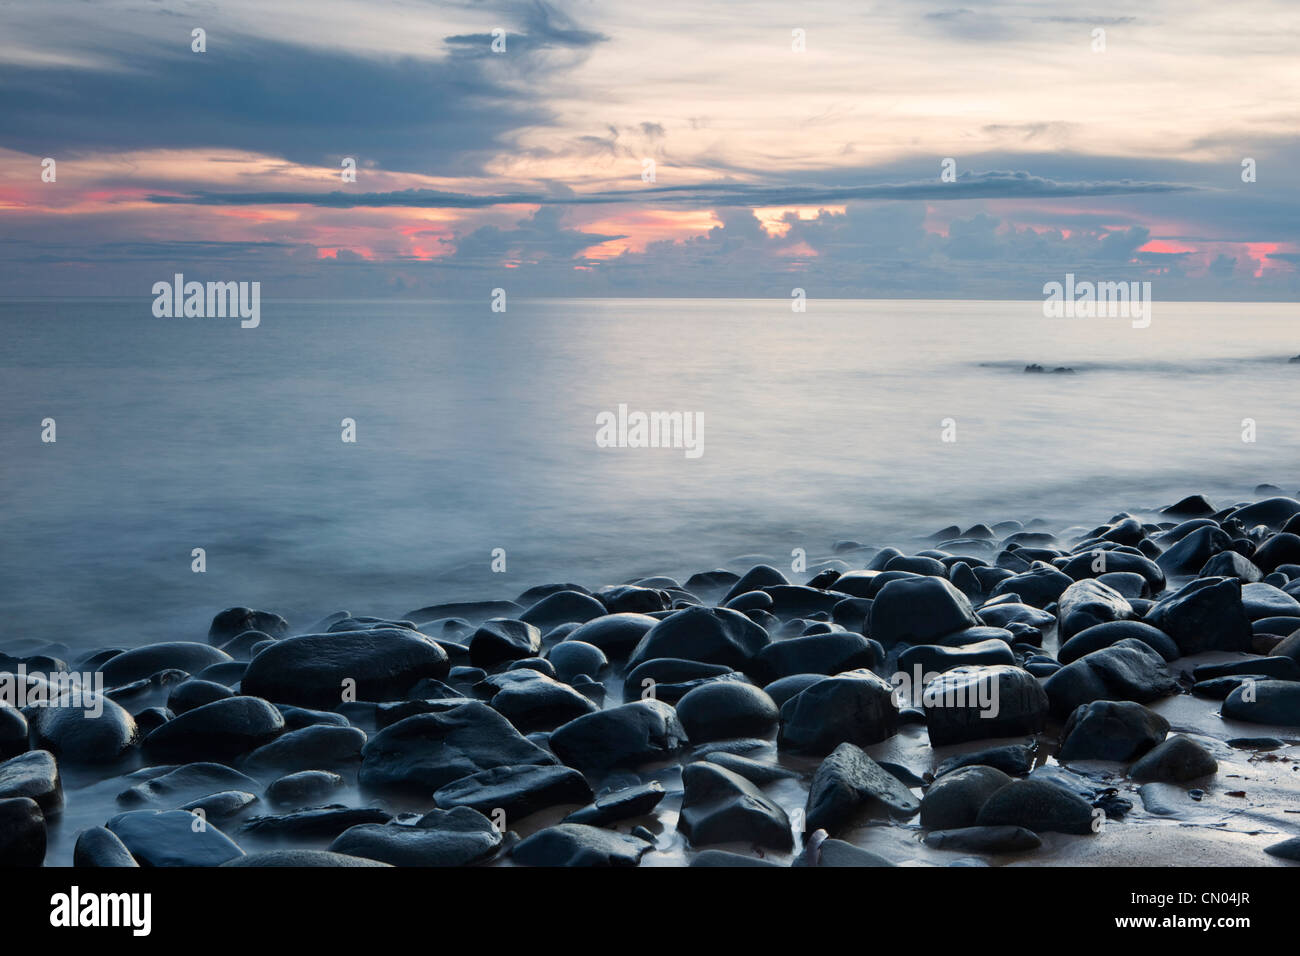 Onde che lambiscono le rocce in spiaggia con ciottoli all'alba, vicino a Cairns, Queensland, Australia Foto Stock